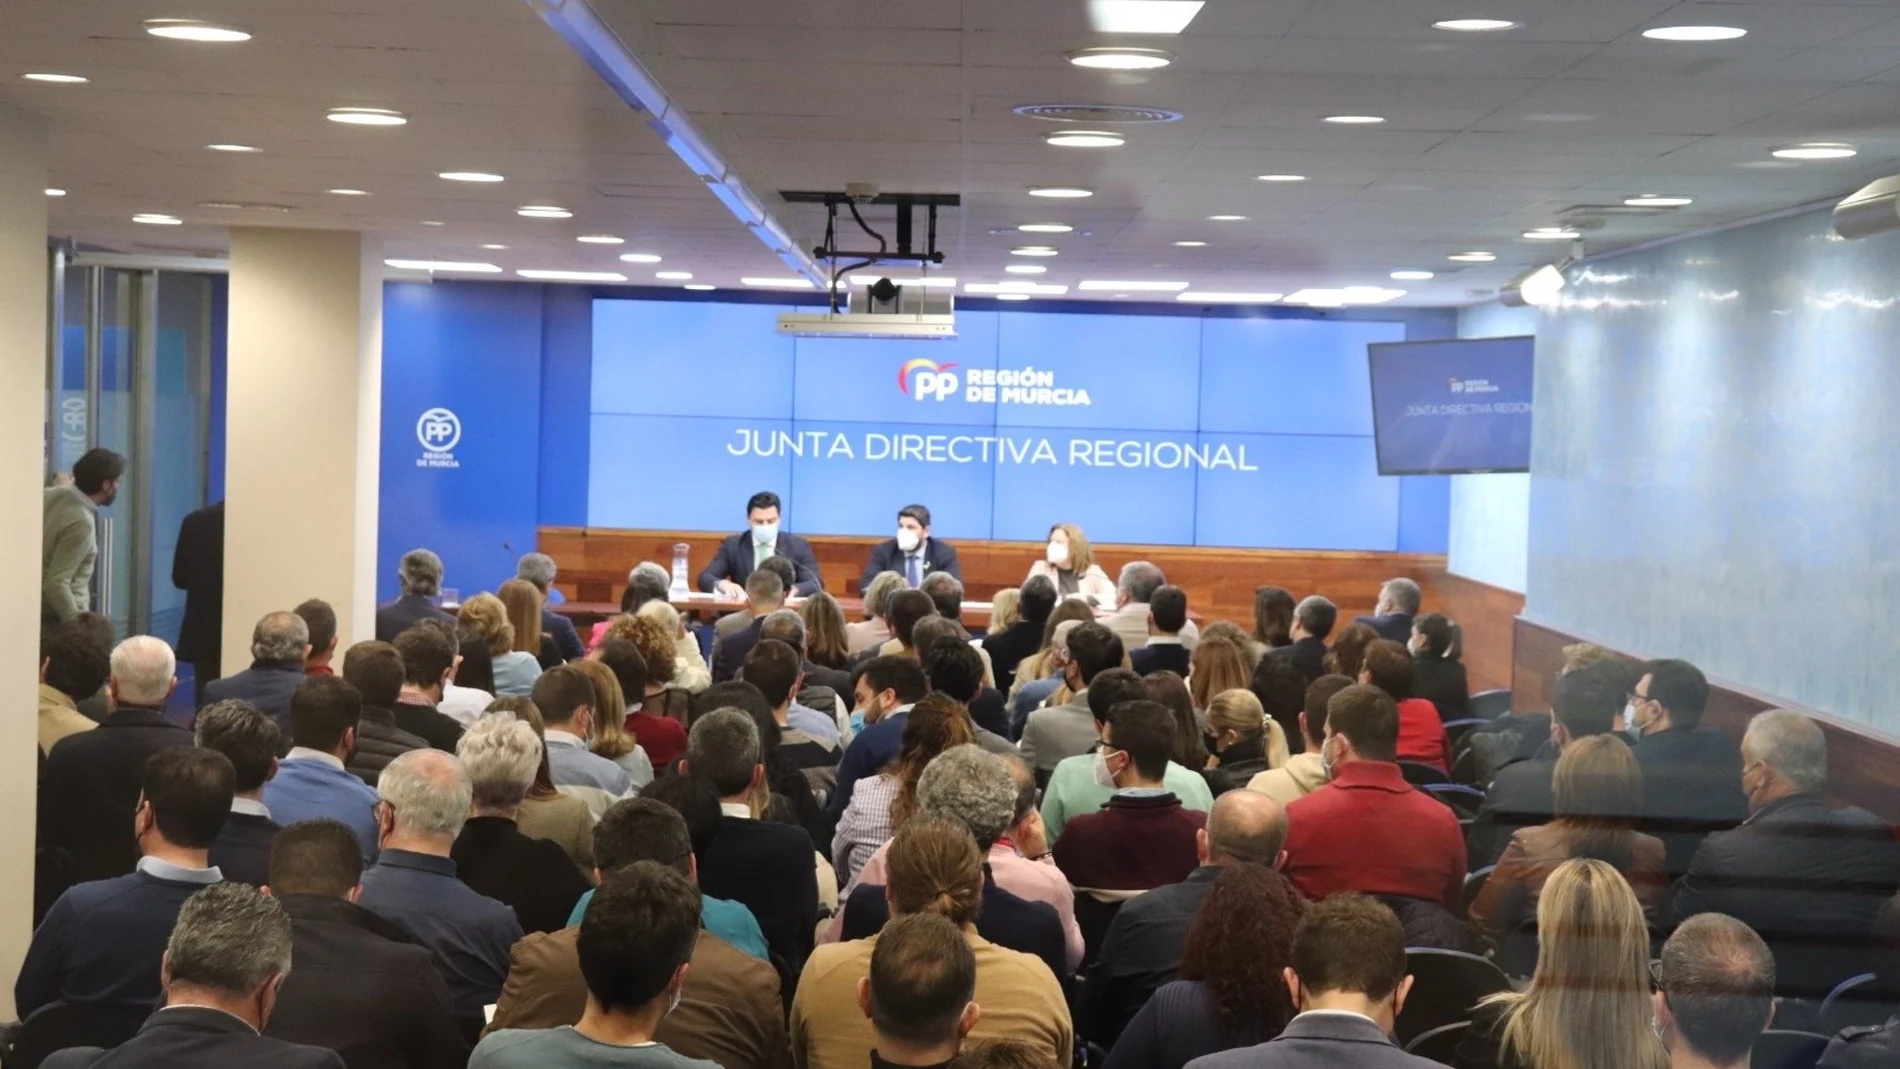 Reunión de Junta Directiva Regional, presidida por Fernando López Miras